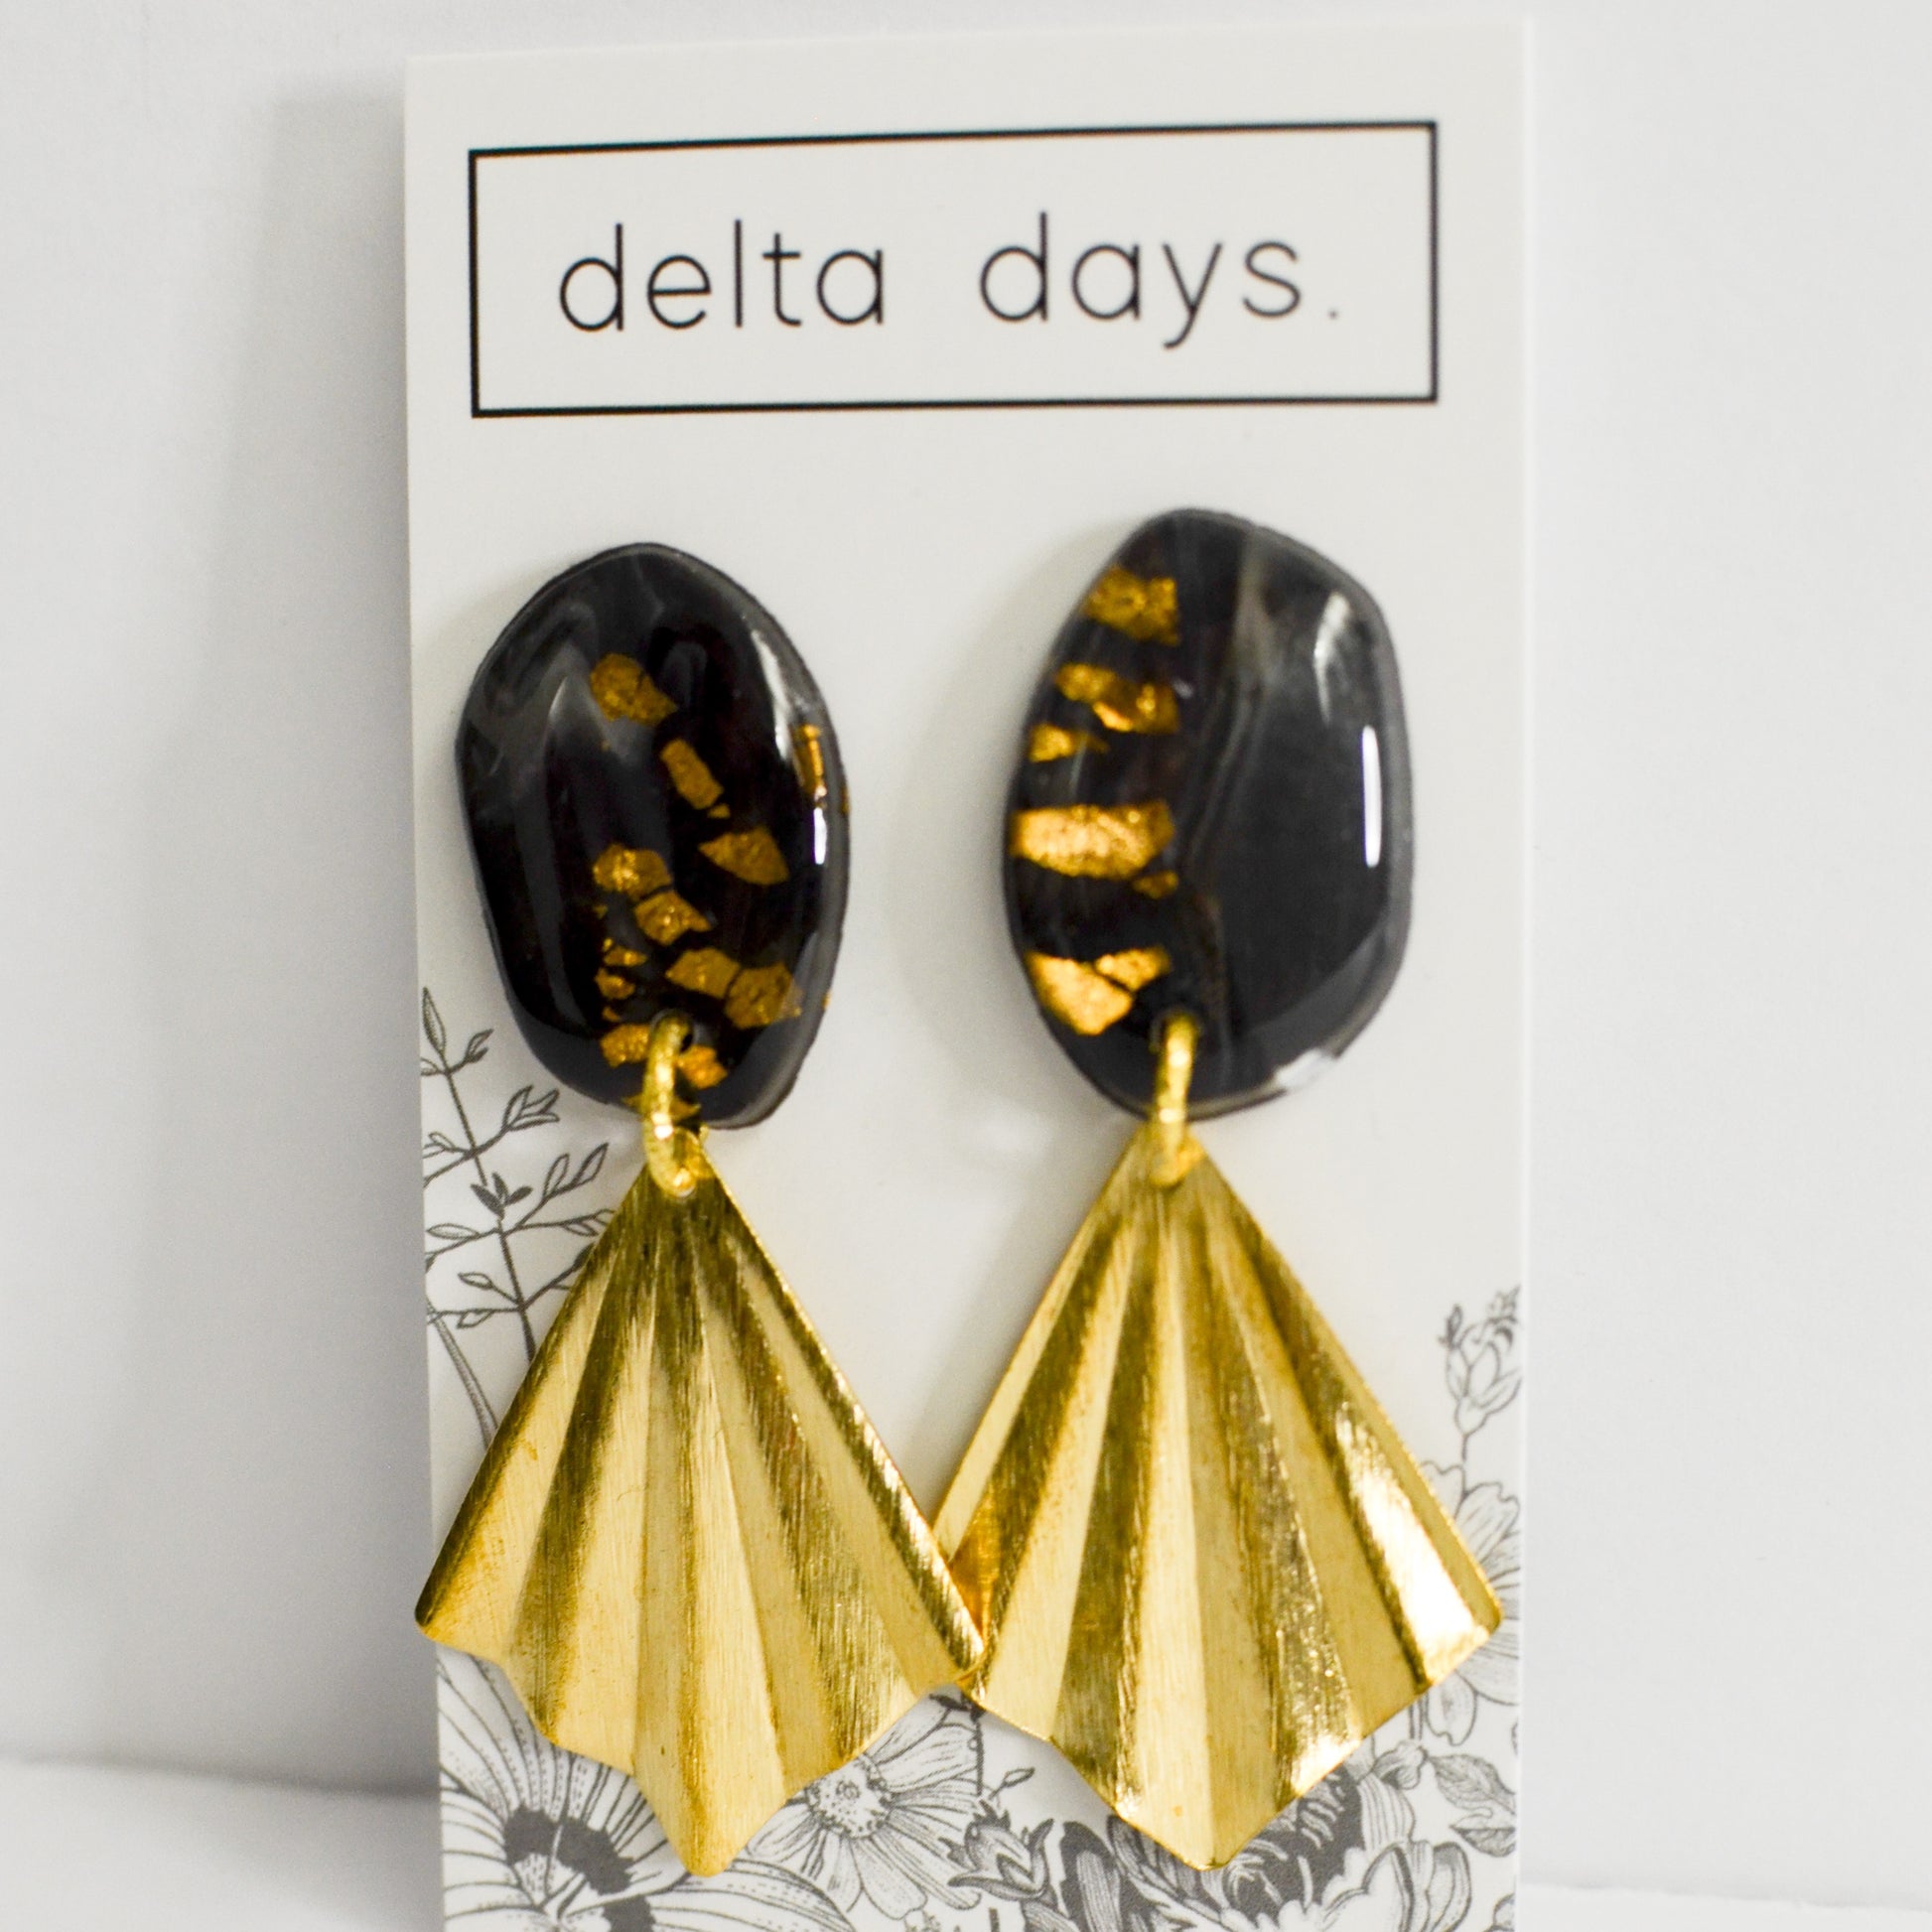 12 Delta Days. X Details - The Details Boutique